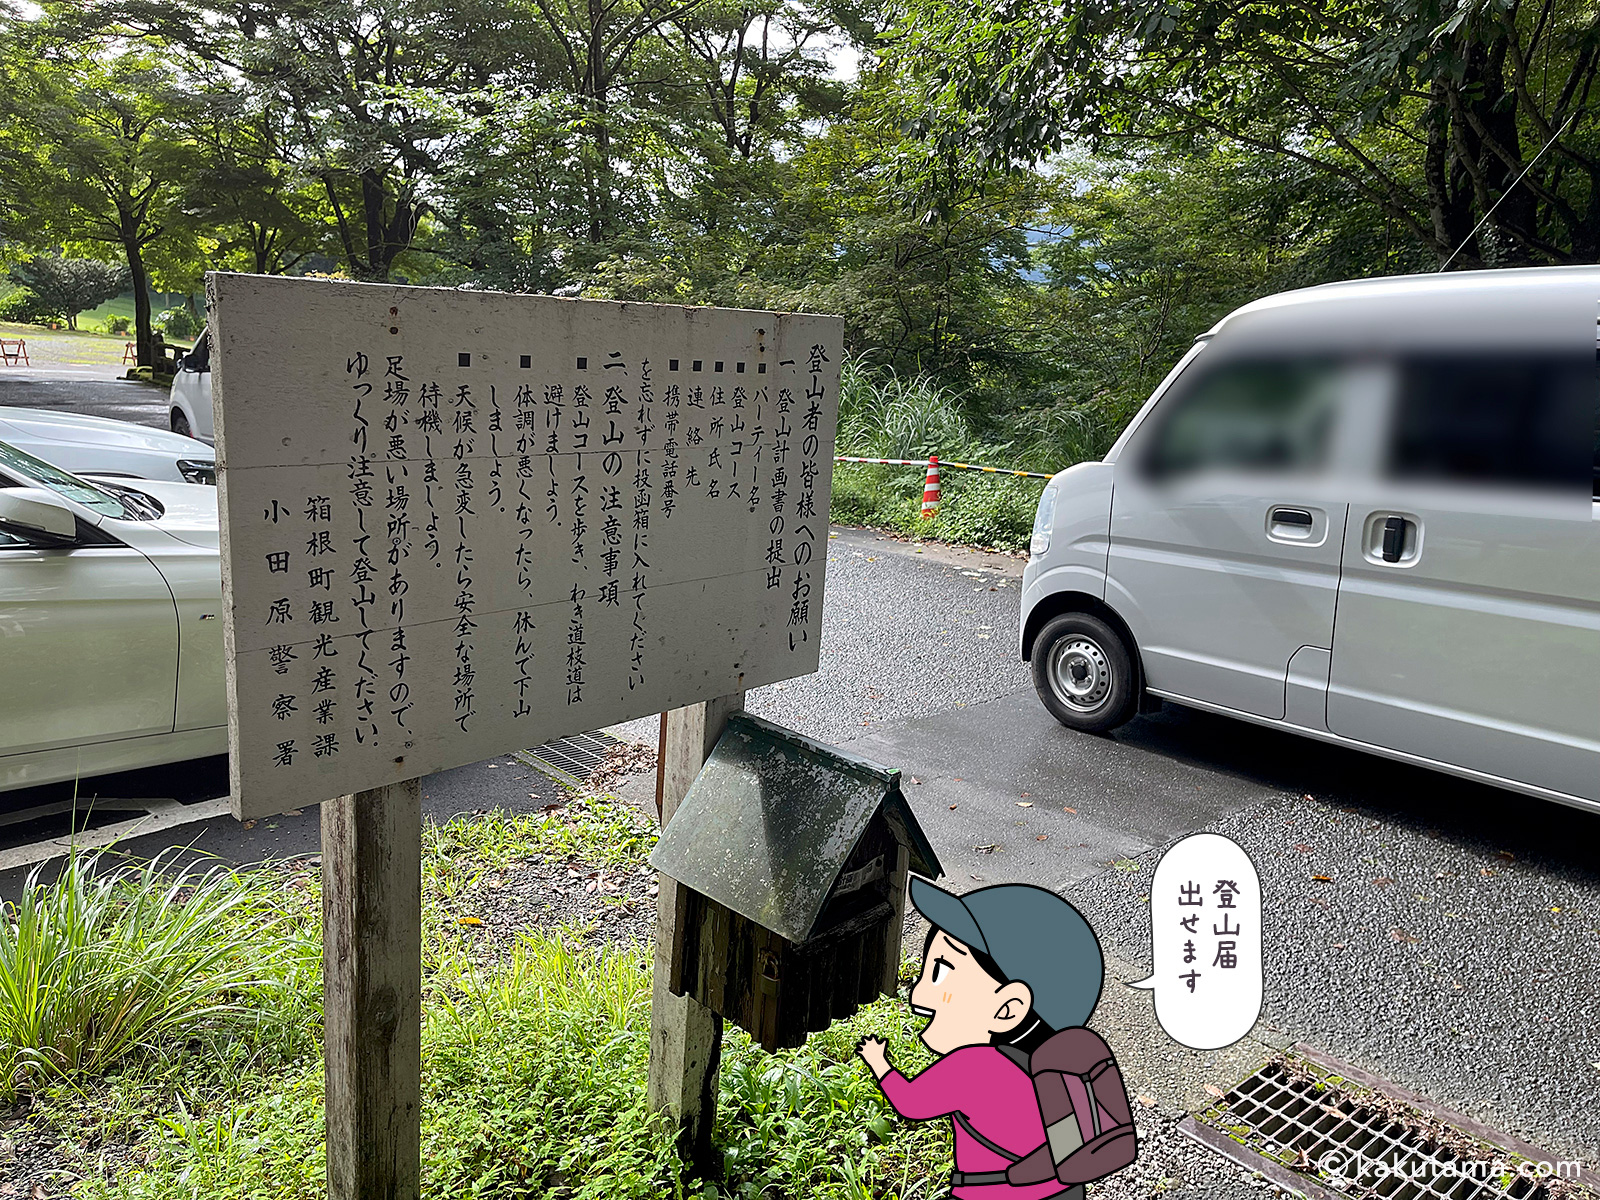 箱根観光産業かからの登山者へのお願い看板の写真と登山者のイラスト